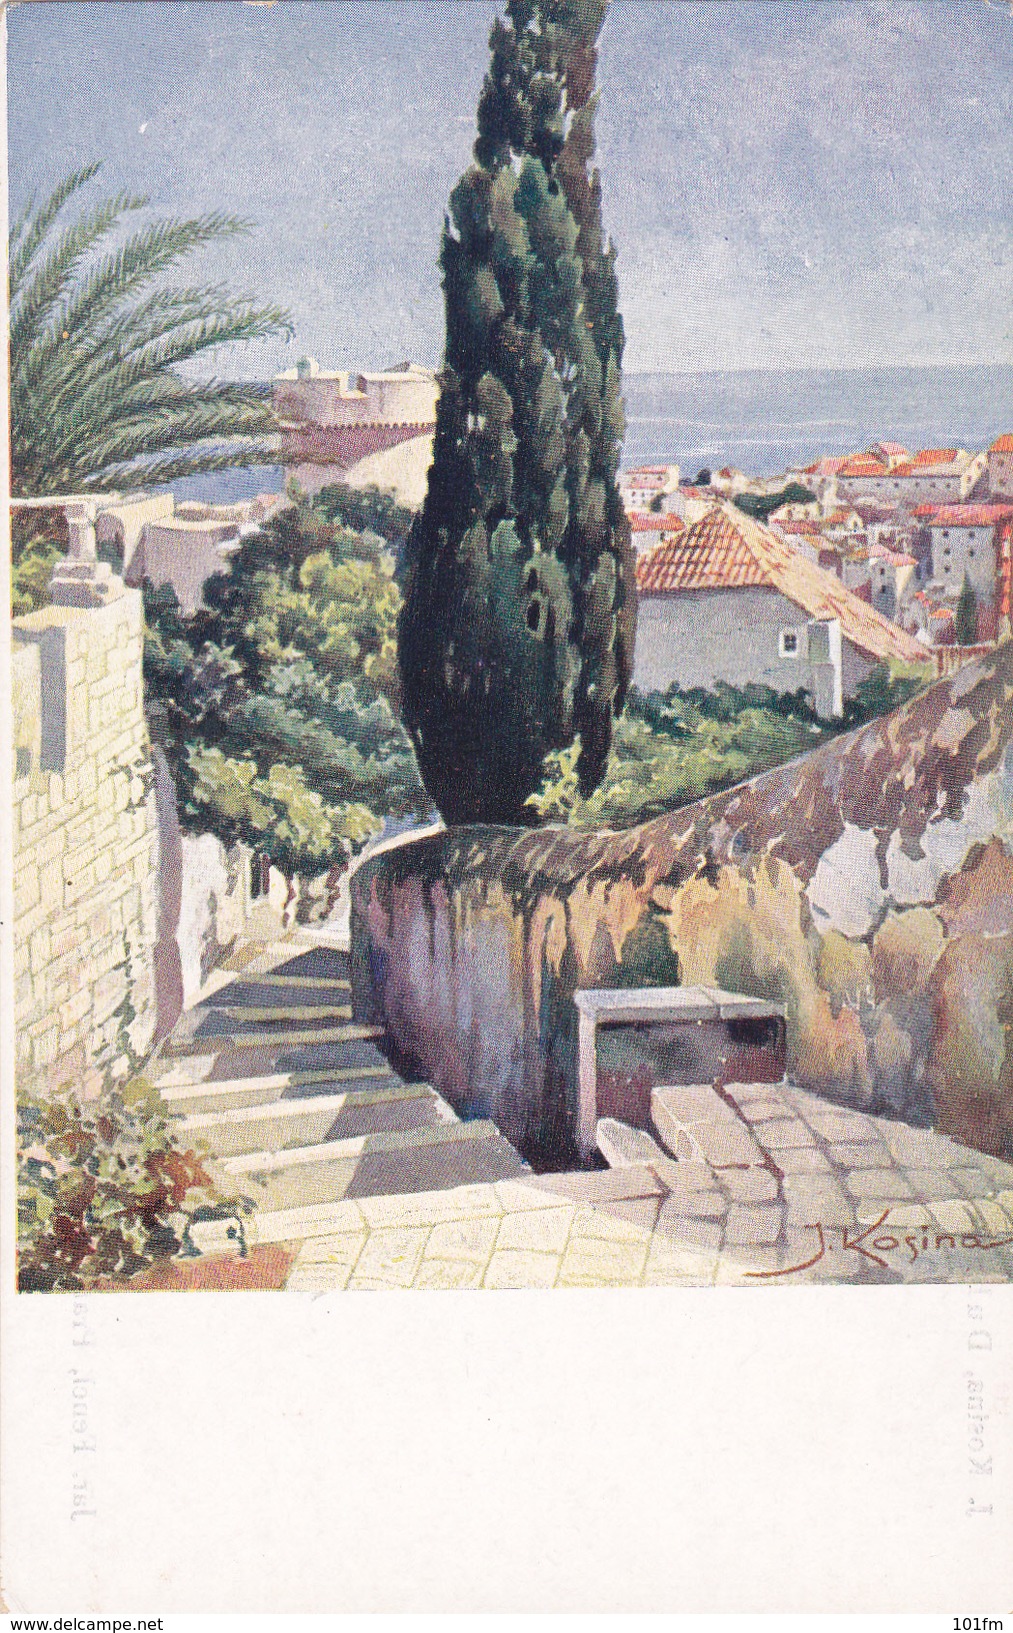 Dubrovnik - Ragusa , Artist J.Kosina - Croatia